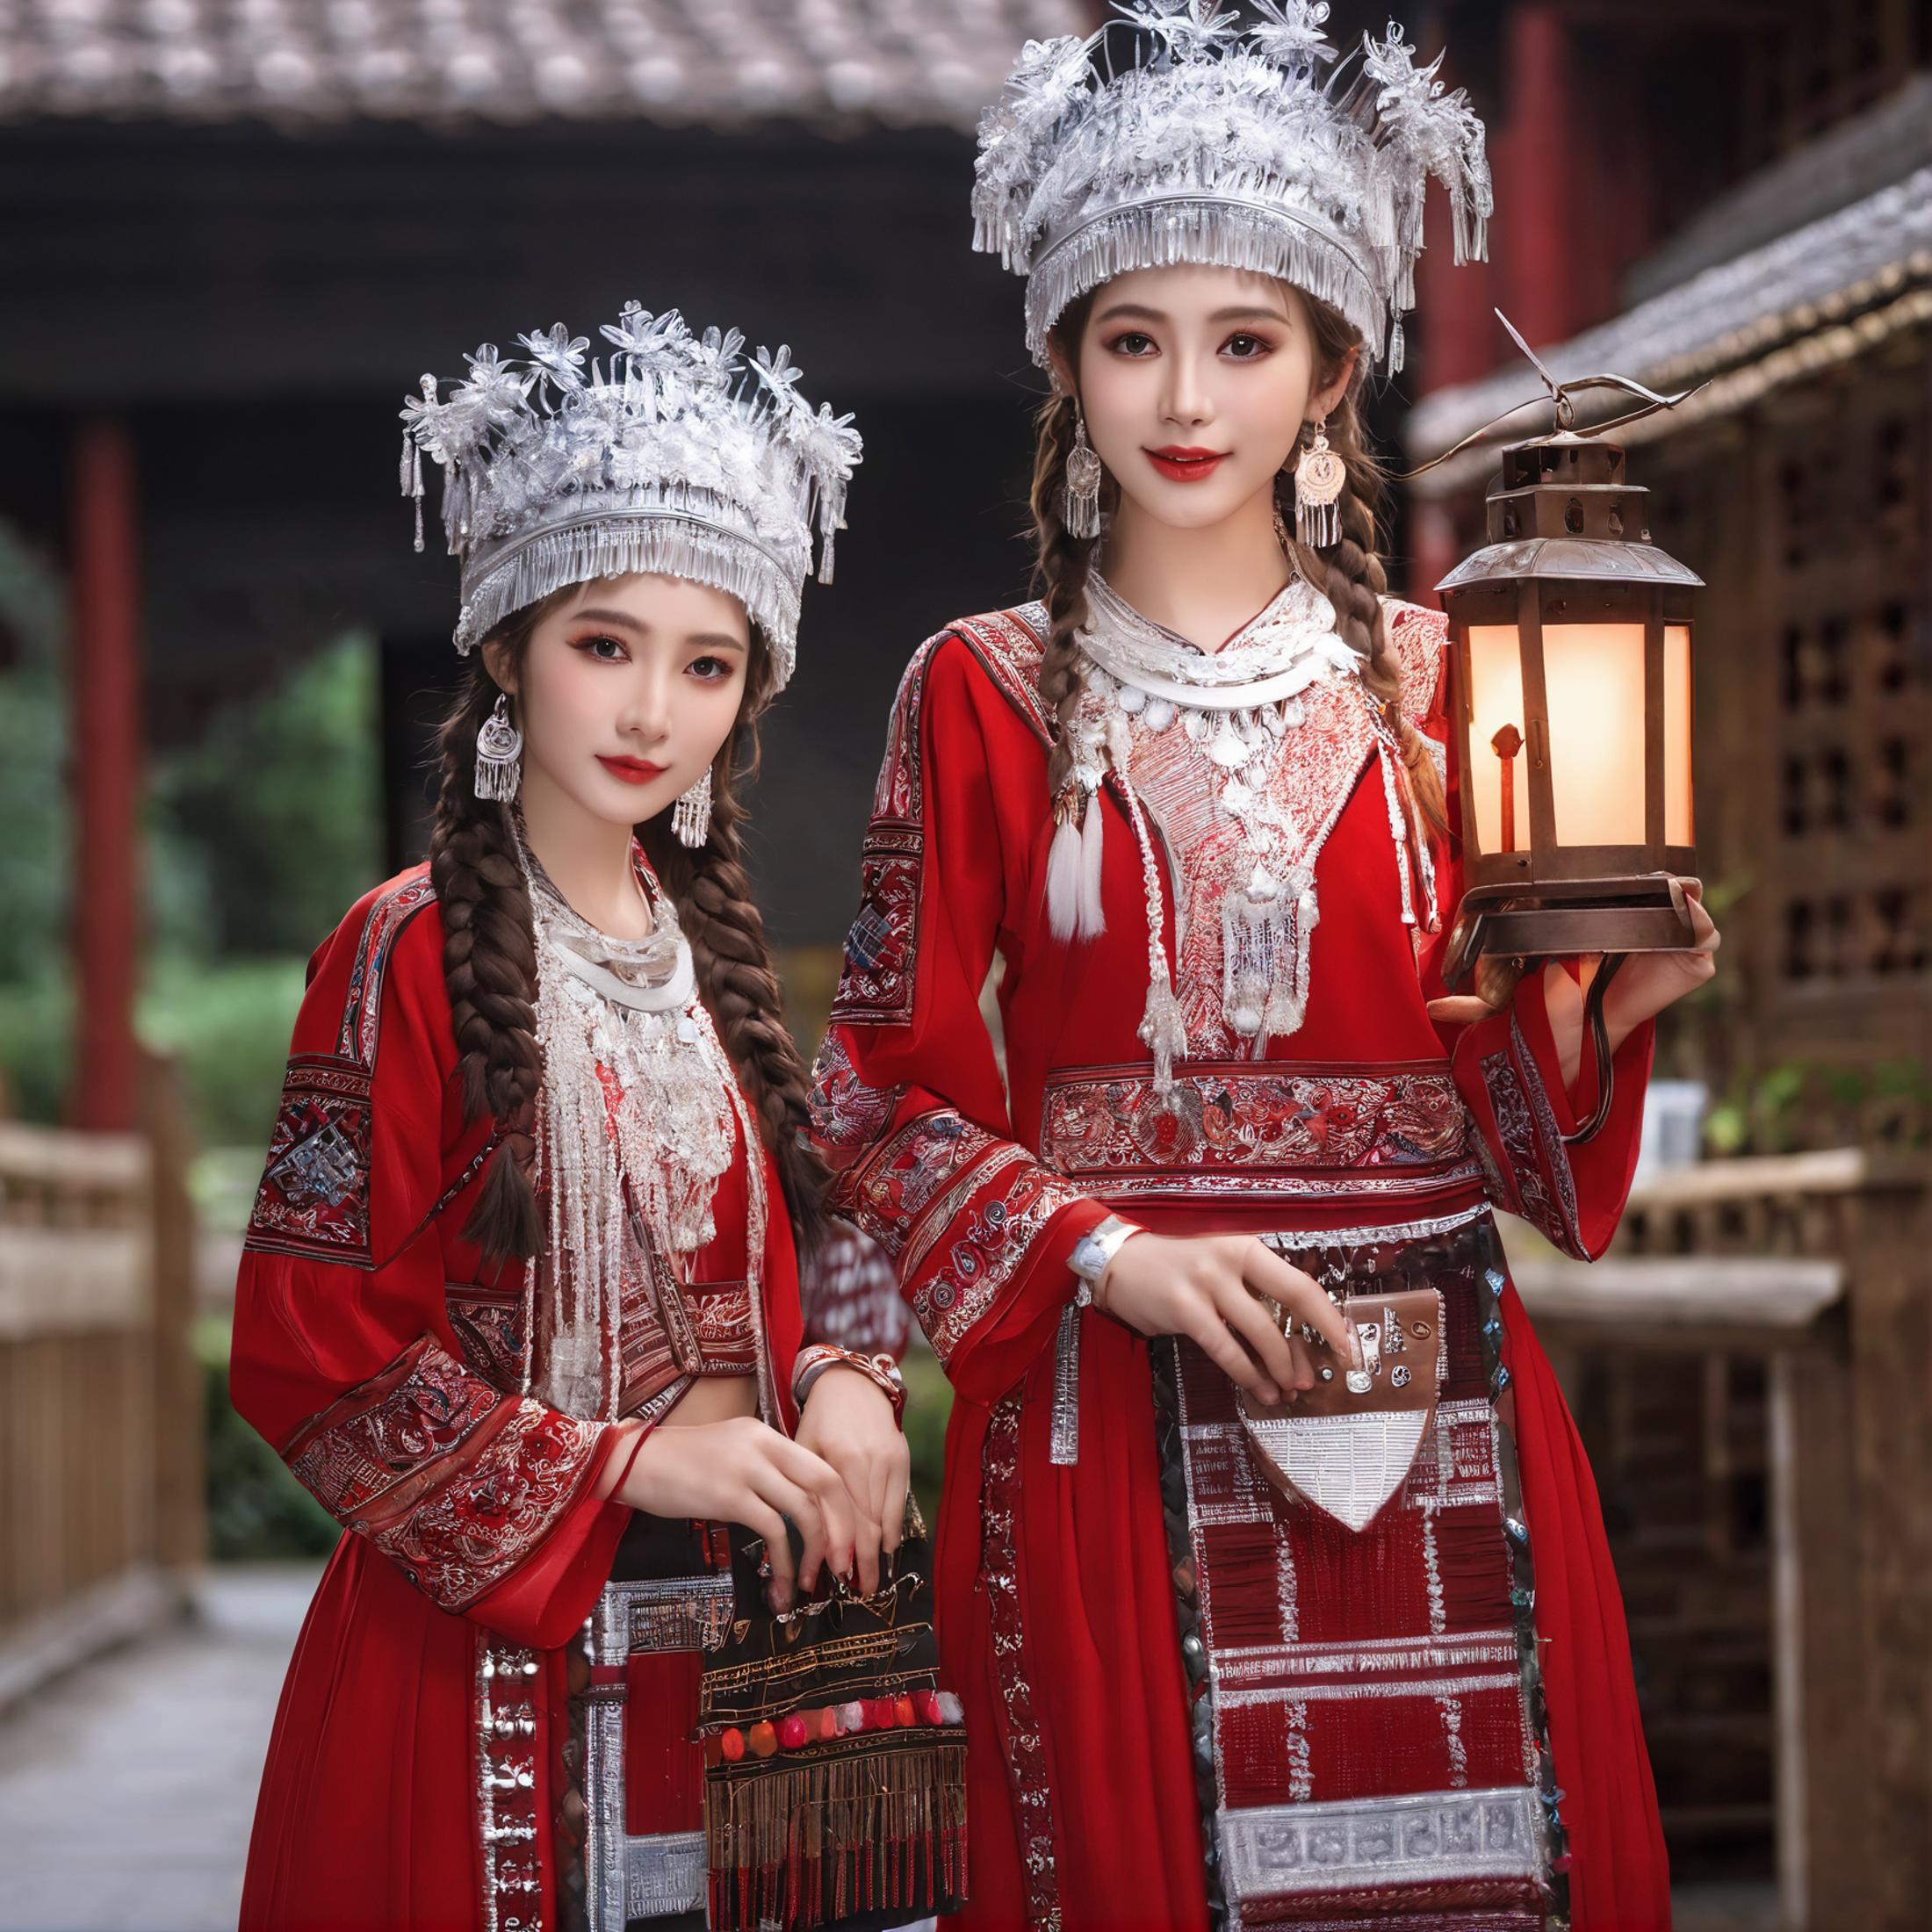 苗元素衣服SDXL|Hmong Elements costume image by zhixuan08299144